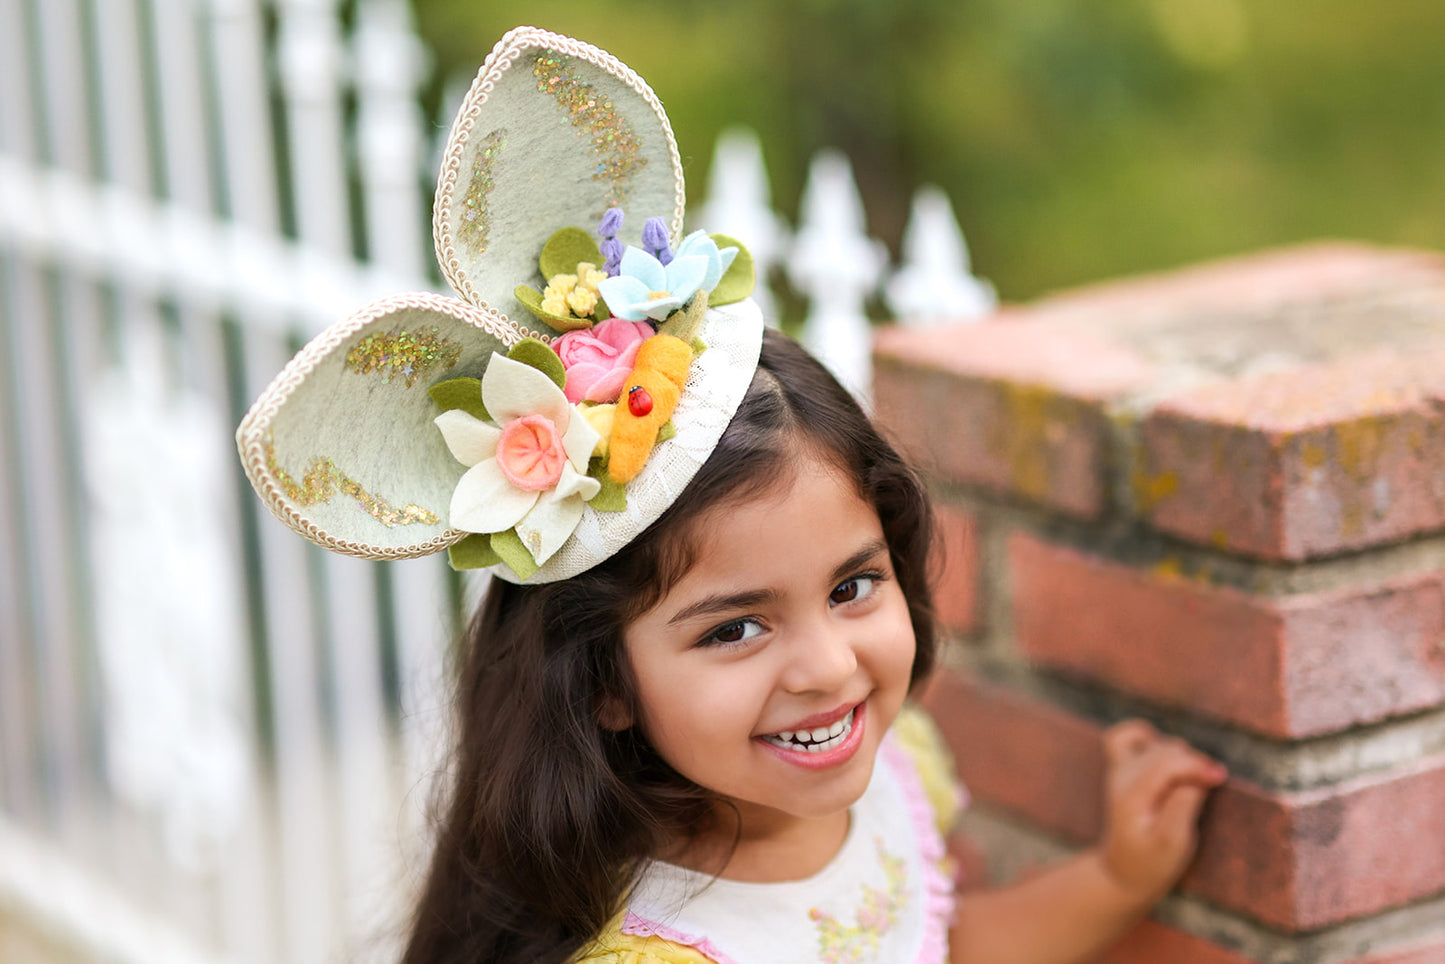 Fancy Spring Bunny Ears Headpiece